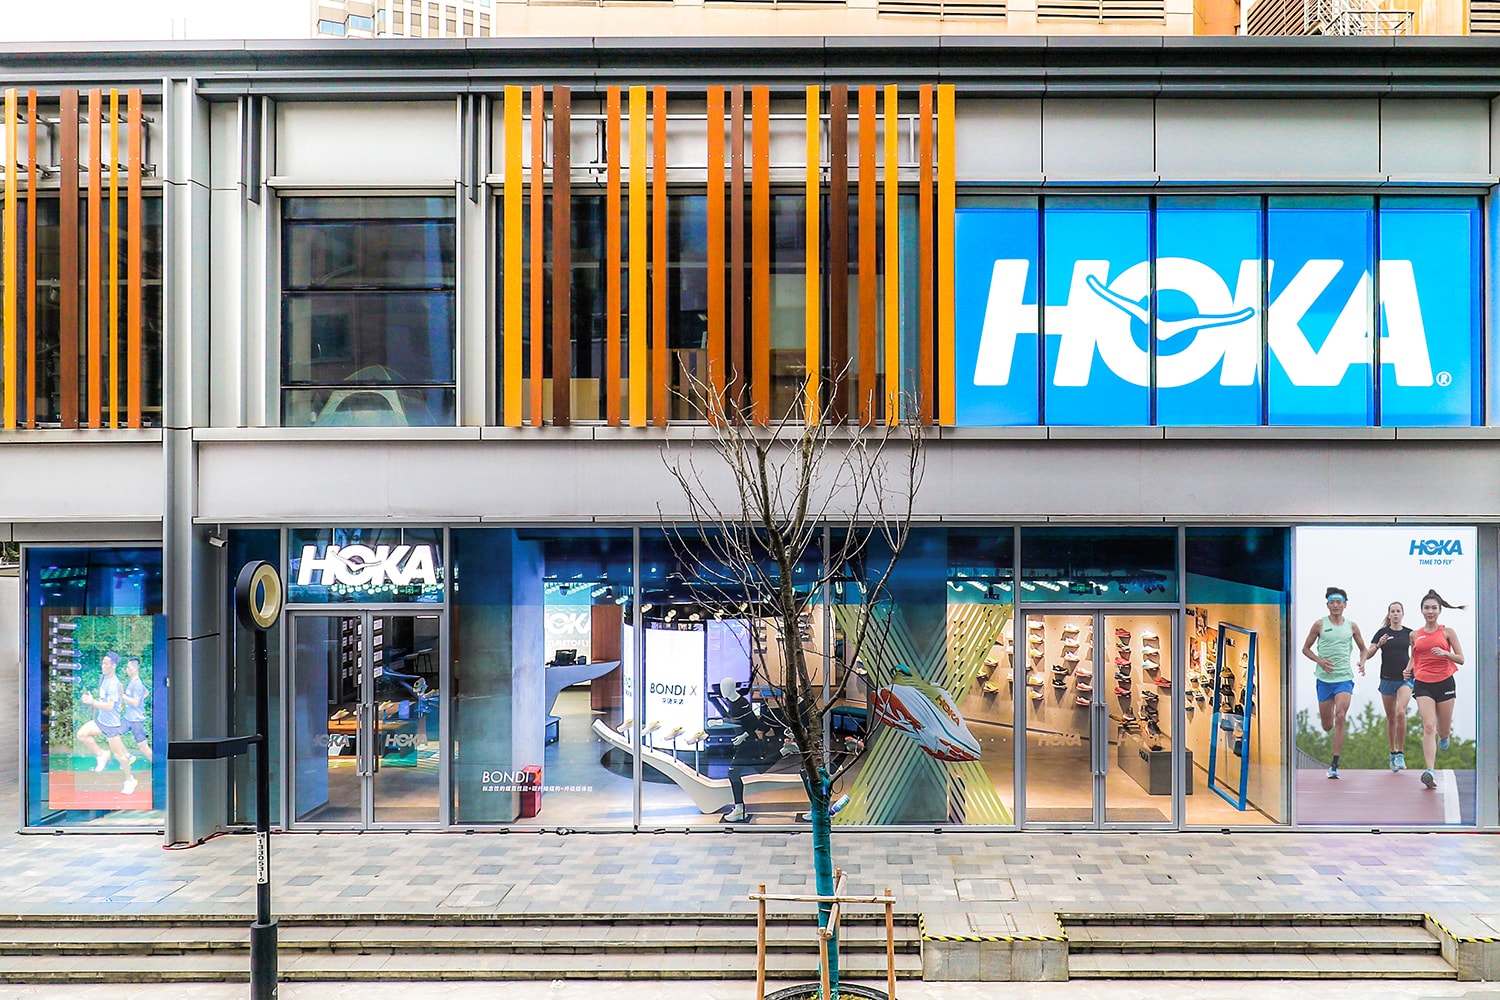 HOKA ONE ONE 全球首家直营品牌体验店开业